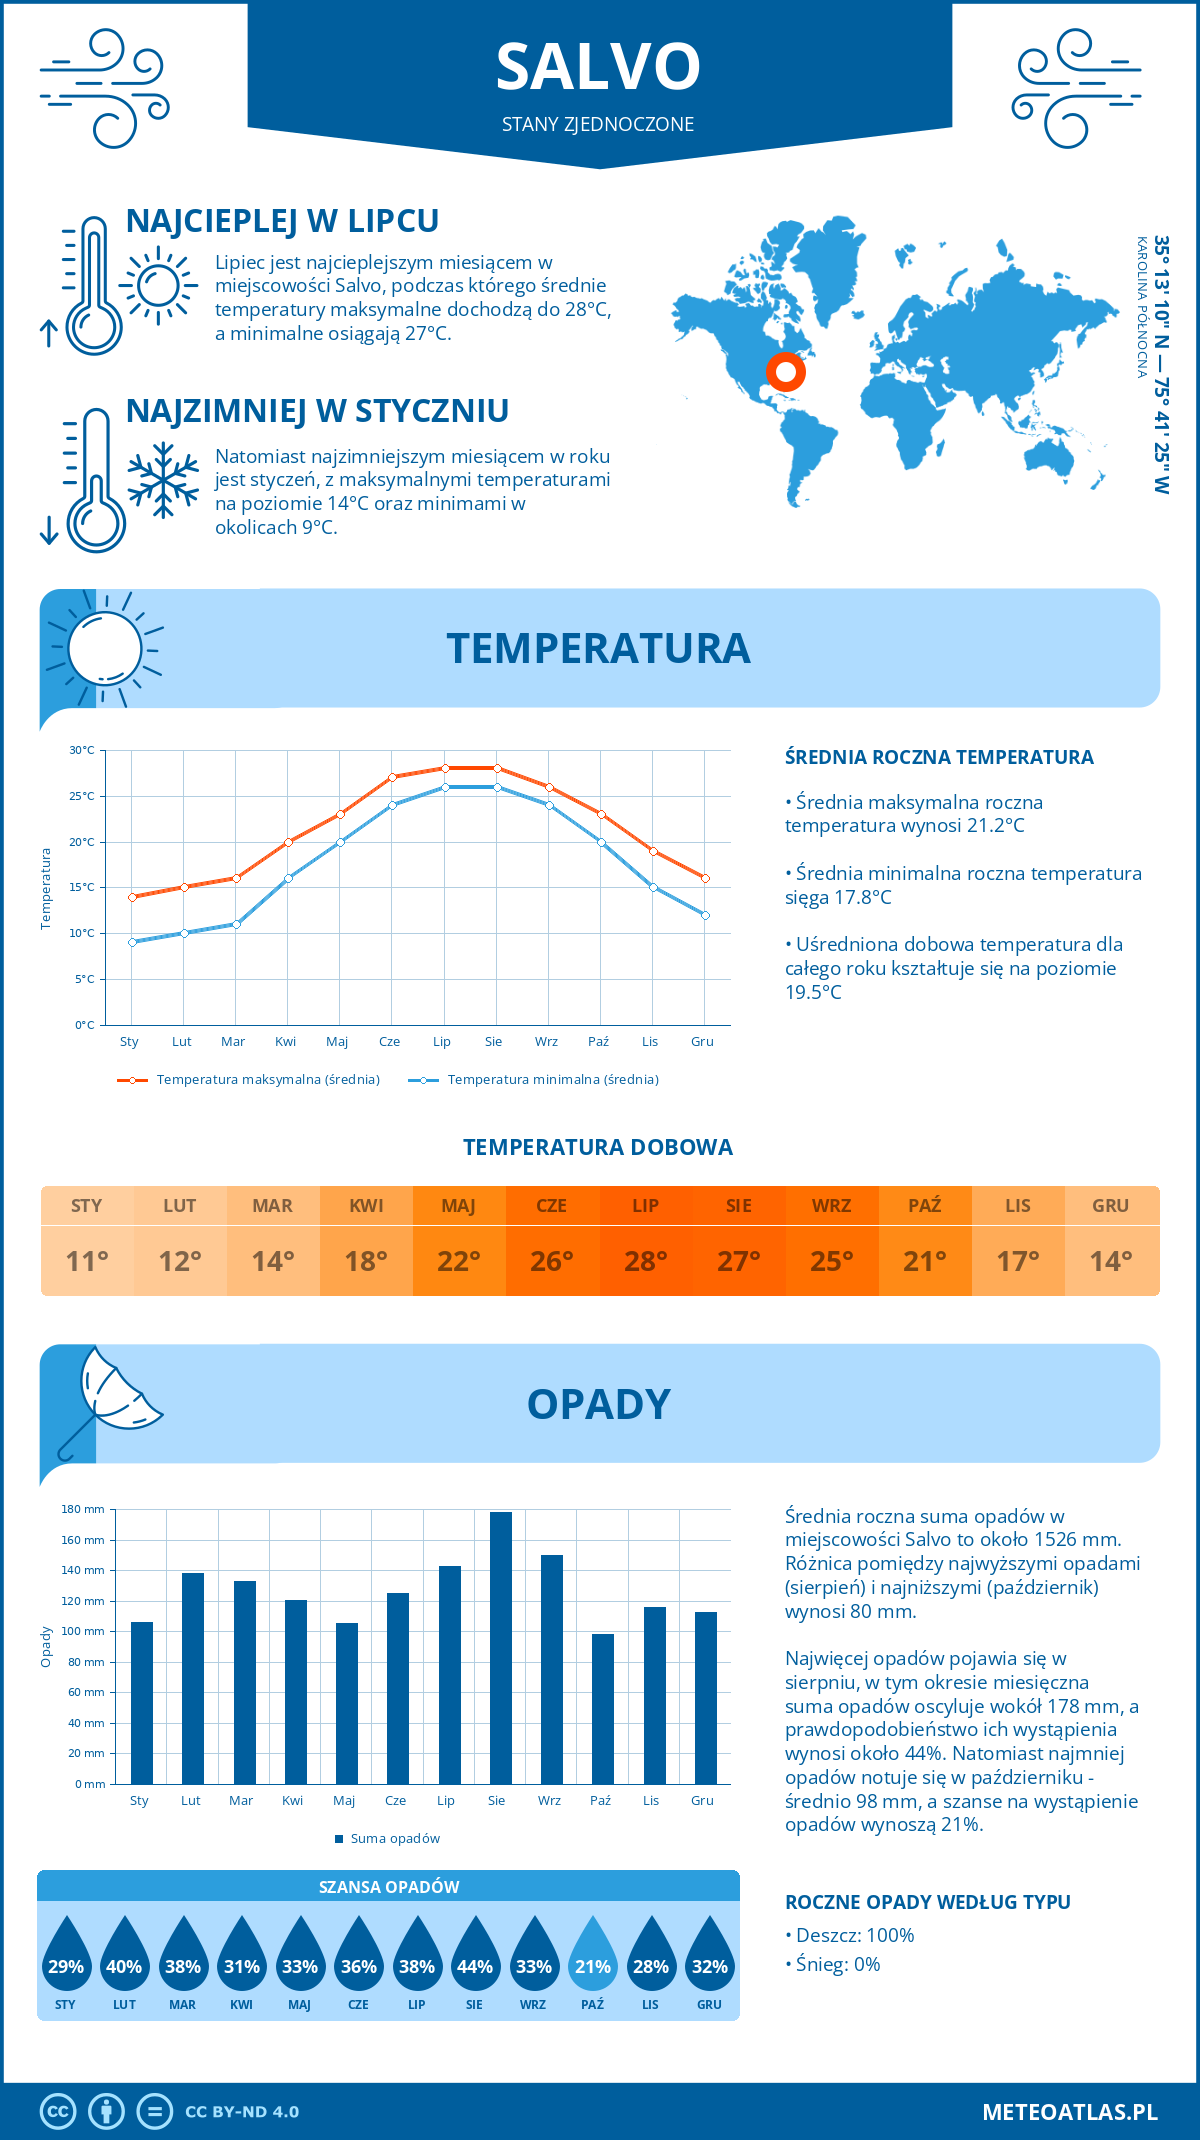 Pogoda Salvo (Stany Zjednoczone). Temperatura oraz opady.